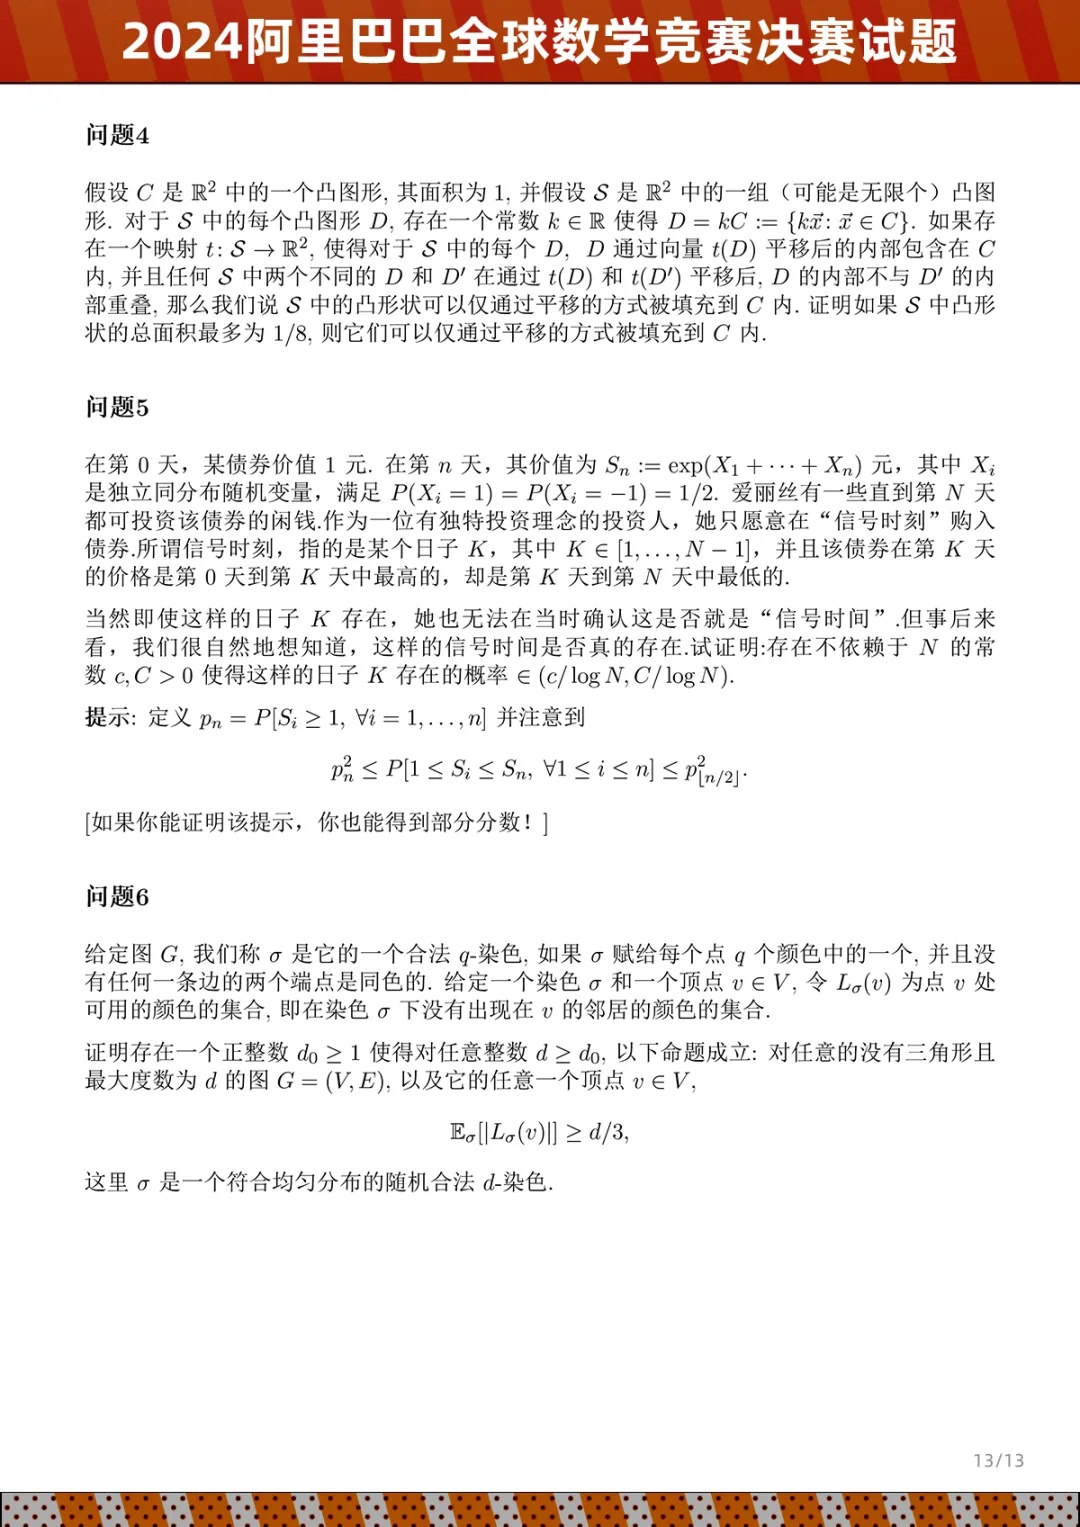 姜萍入围的2024阿里巴巴全球数学竞赛决赛试题公布